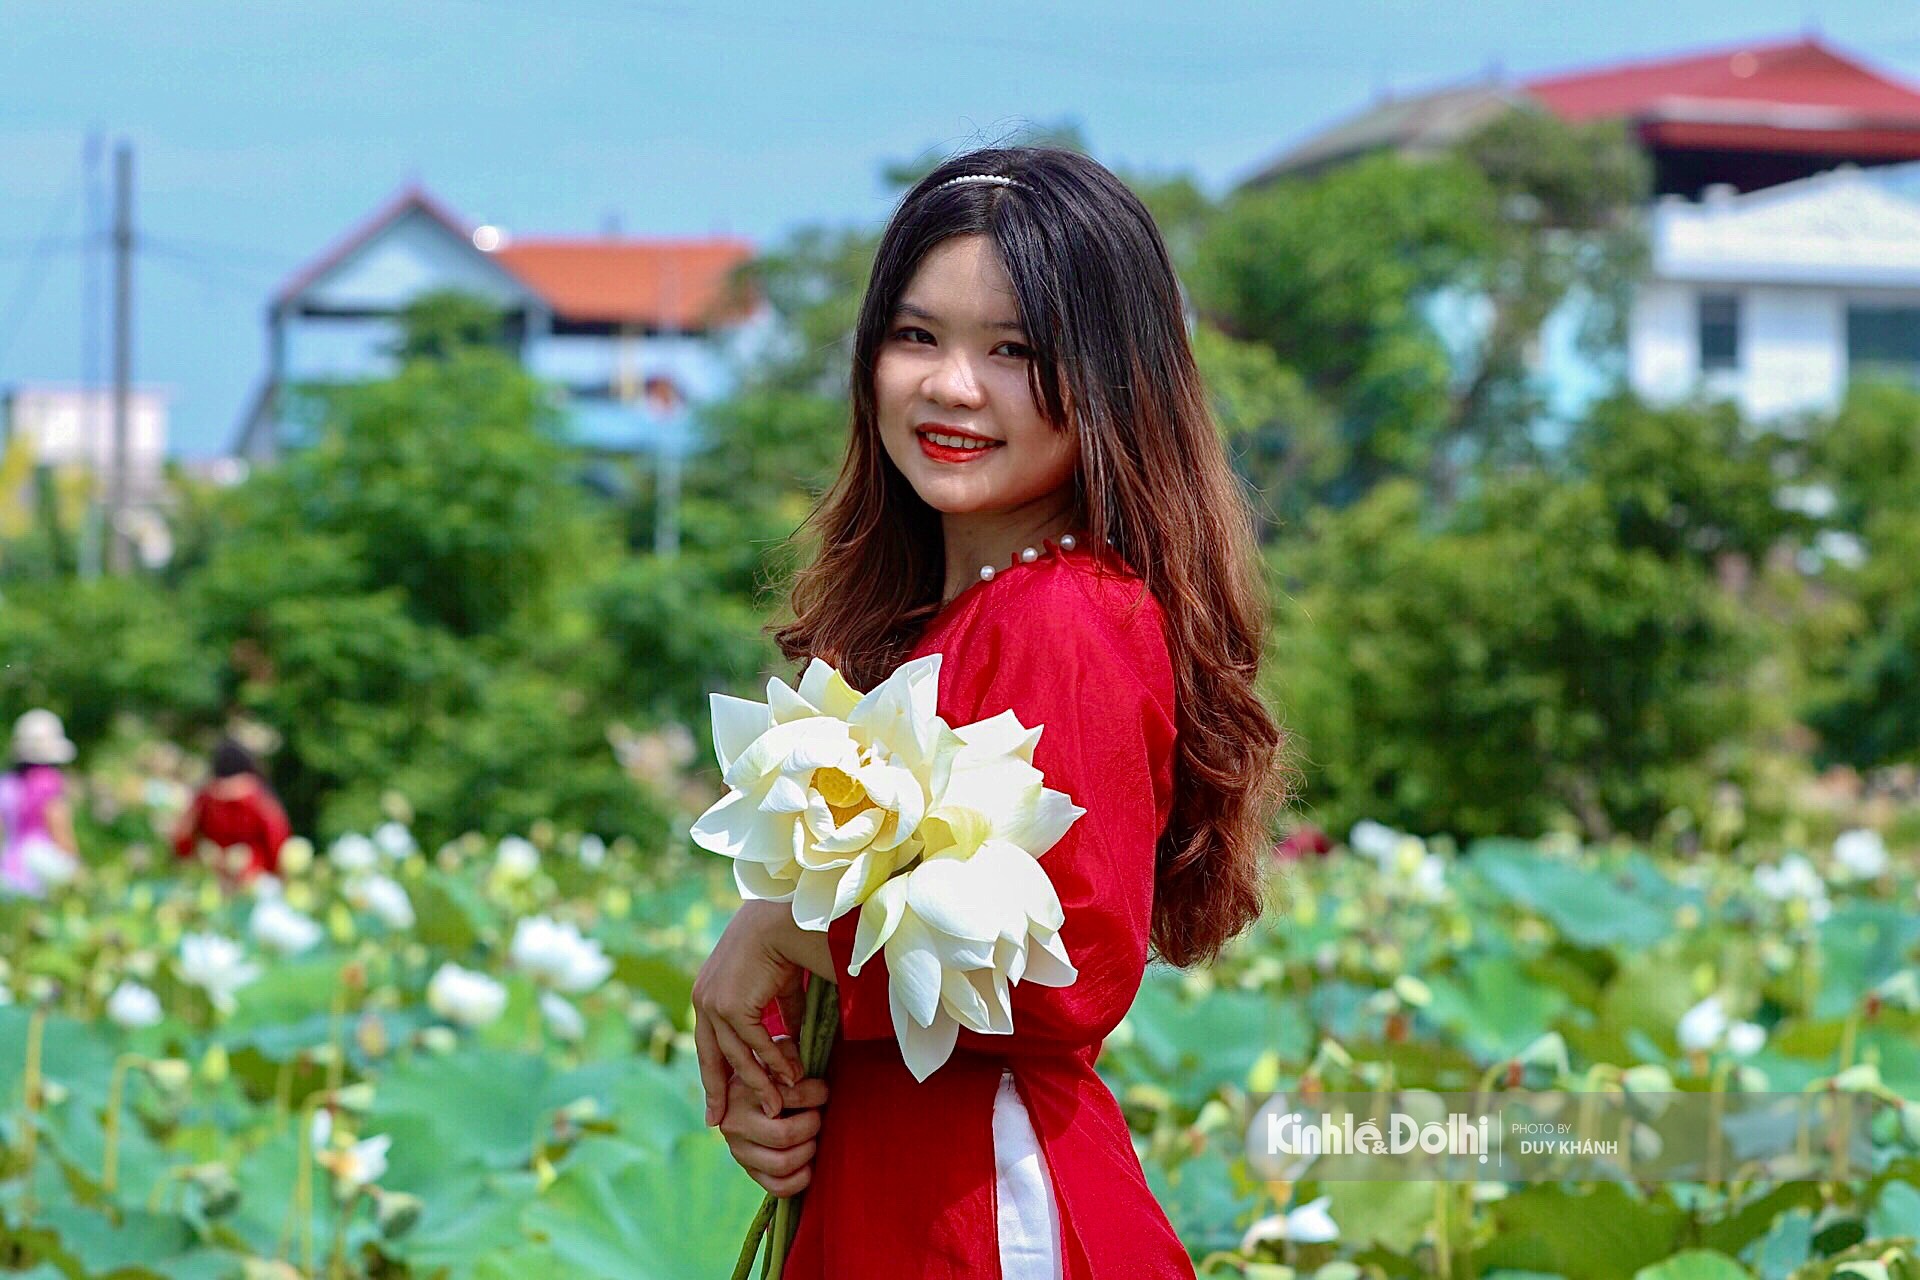 Hãy cùng chiêm ngưỡng vẻ đẹp tuyệt vời của hoa sen trắng trong hình ảnh này. Đây là loài hoa mang ý nghĩa trang trọng và cao quý trong văn hóa Việt Nam. Hình ảnh chắc chắn sẽ mang lại cho bạn cảm giác thư giãn và bình yên trong lòng.